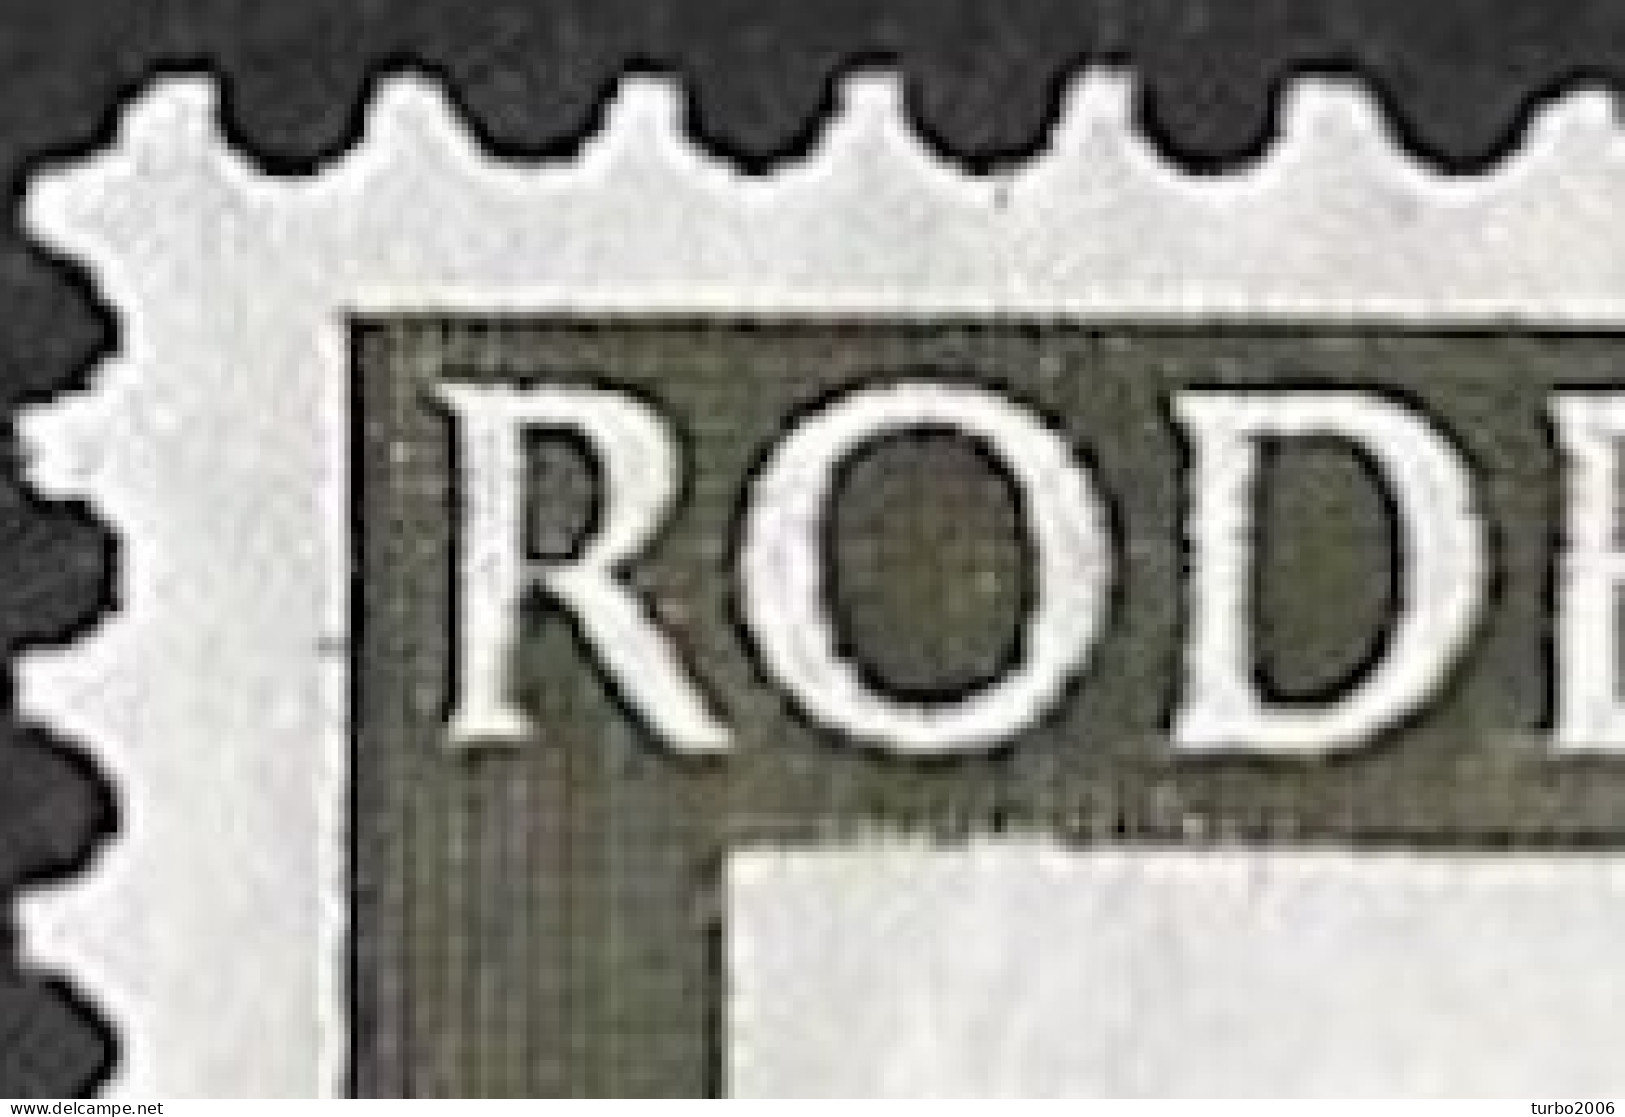 Plaatfout Inham In De Witte Rand Onder De O Van ROde In 1953 Rode Kruis Zegels 2 +3 Ct NVPH 607 PM 2 Ongestempeld - Variedades Y Curiosidades